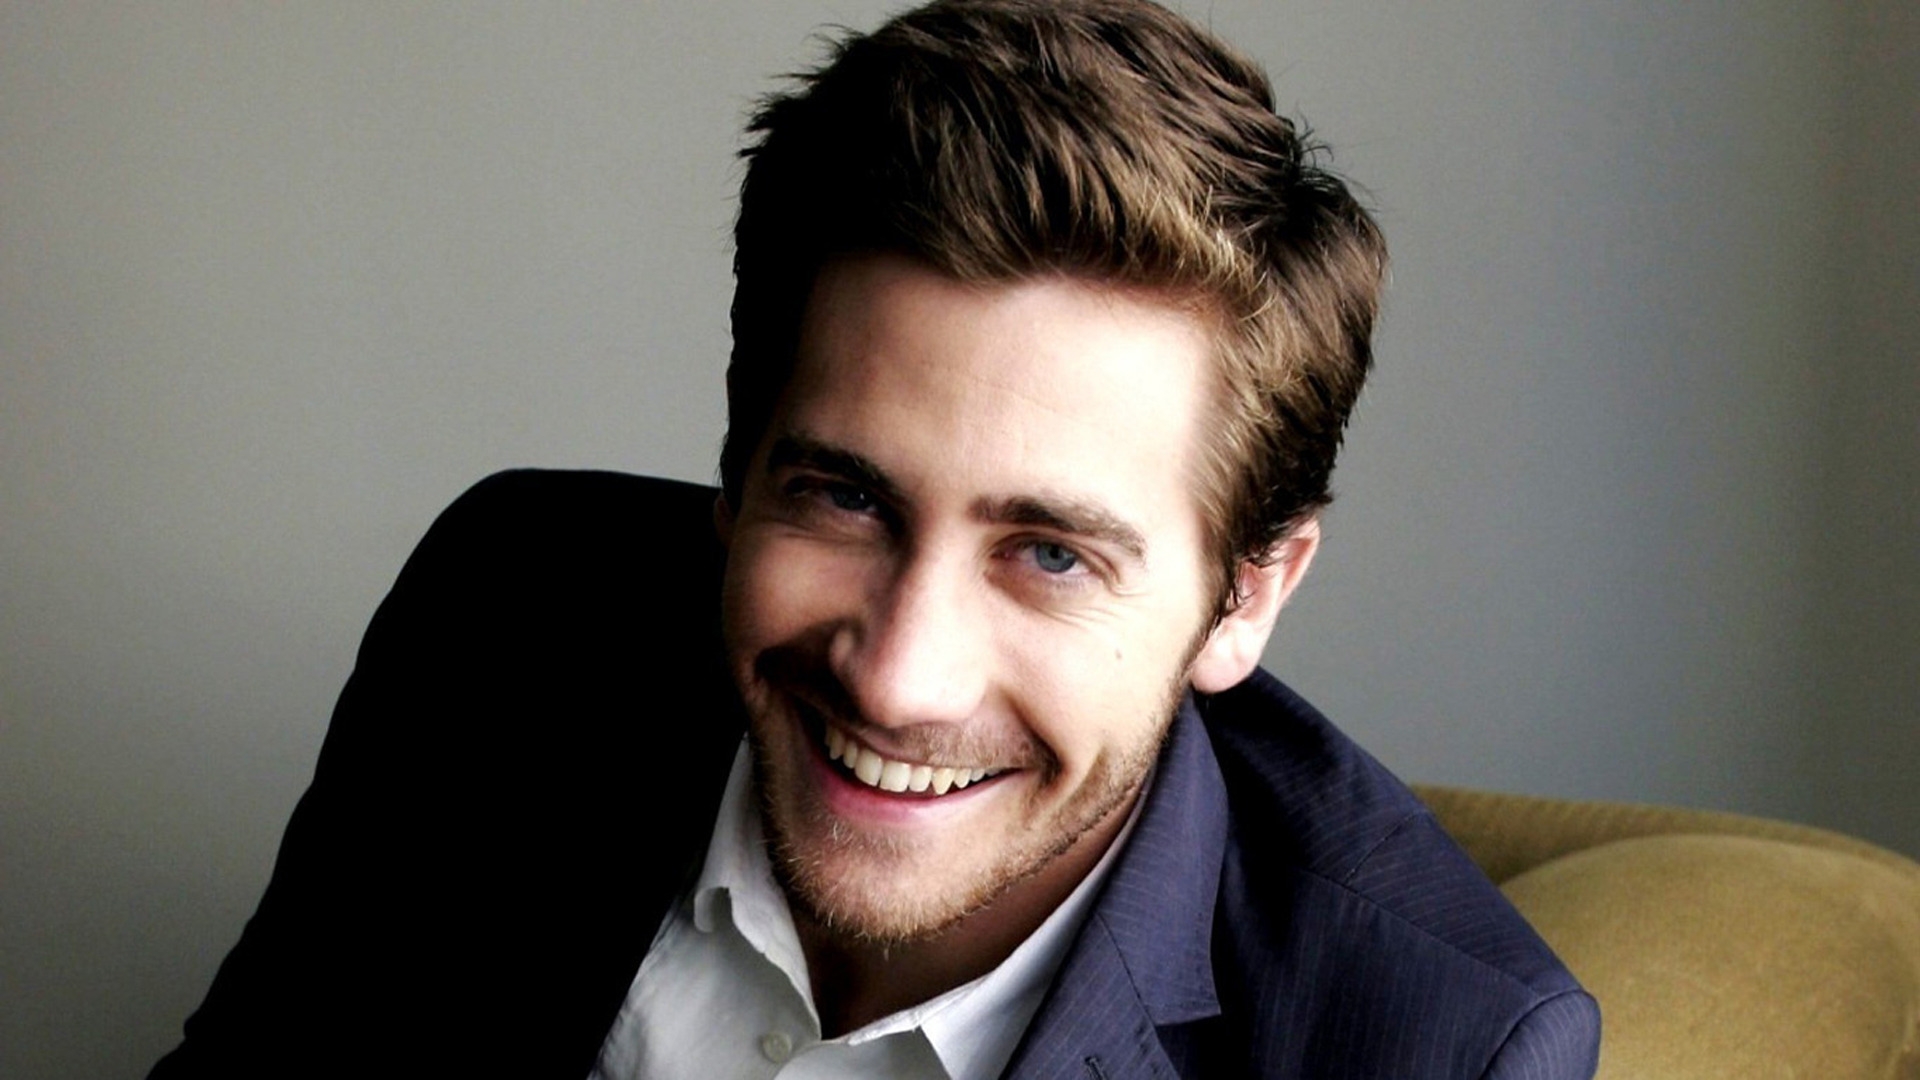 Jake Gyllenhaal Smile for 1920 x 1080 HDTV 1080p resolution